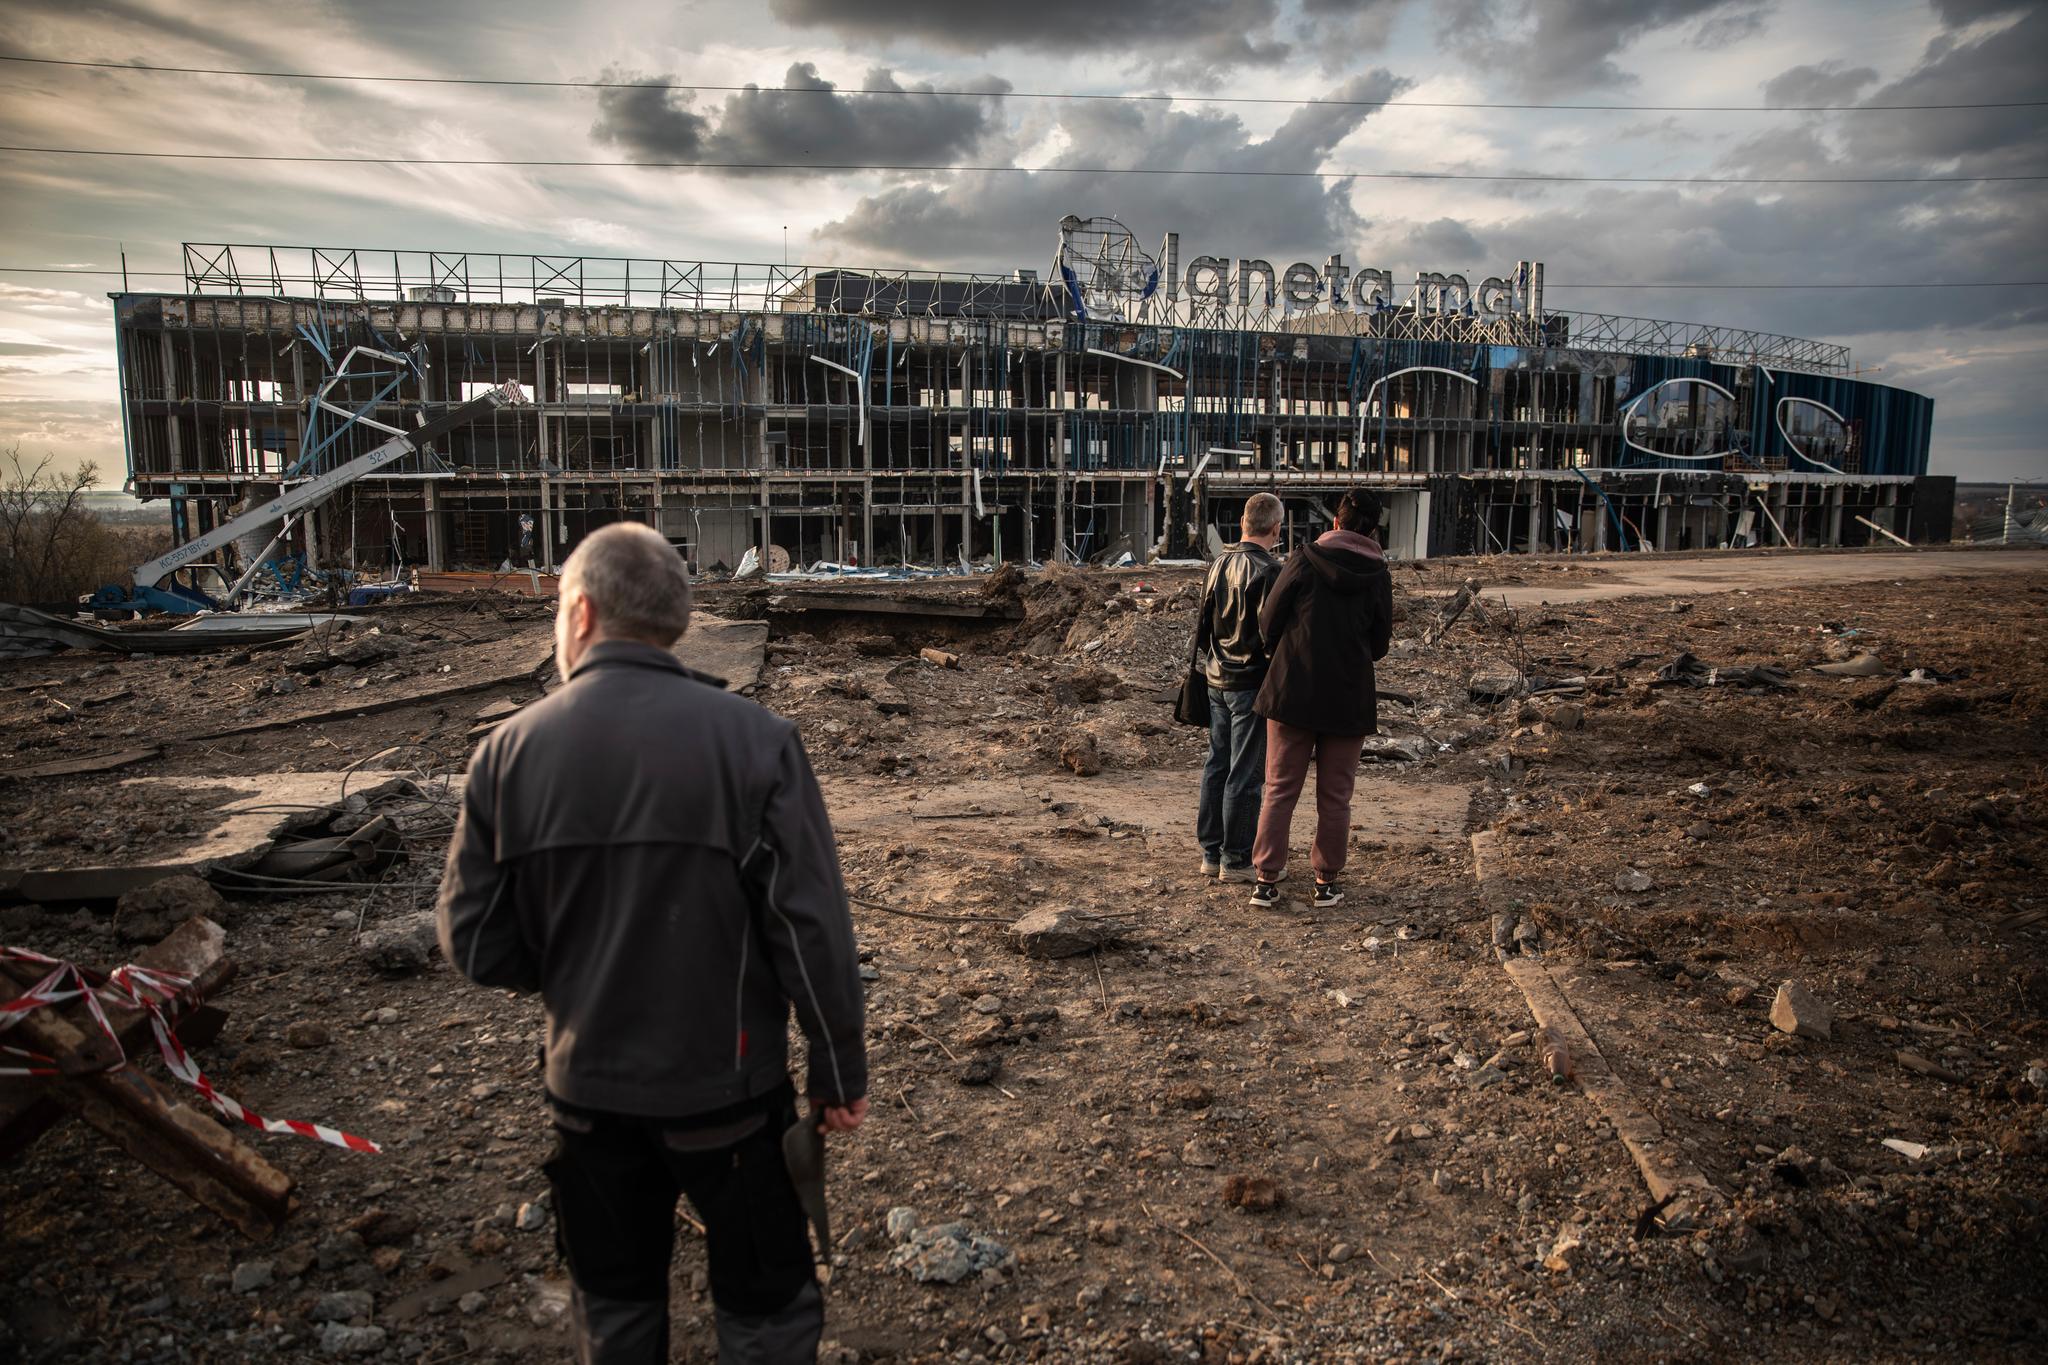 Ukrainere i landets nest største by Kharkiv ser på ødeleggelsene etter et russisk angrep på byen med 1,3 millioner innbyggere. Byen har vært bombet daglig i flere måneder, og flere hundretusener mennesker har vært uten strøm i lange perioder.